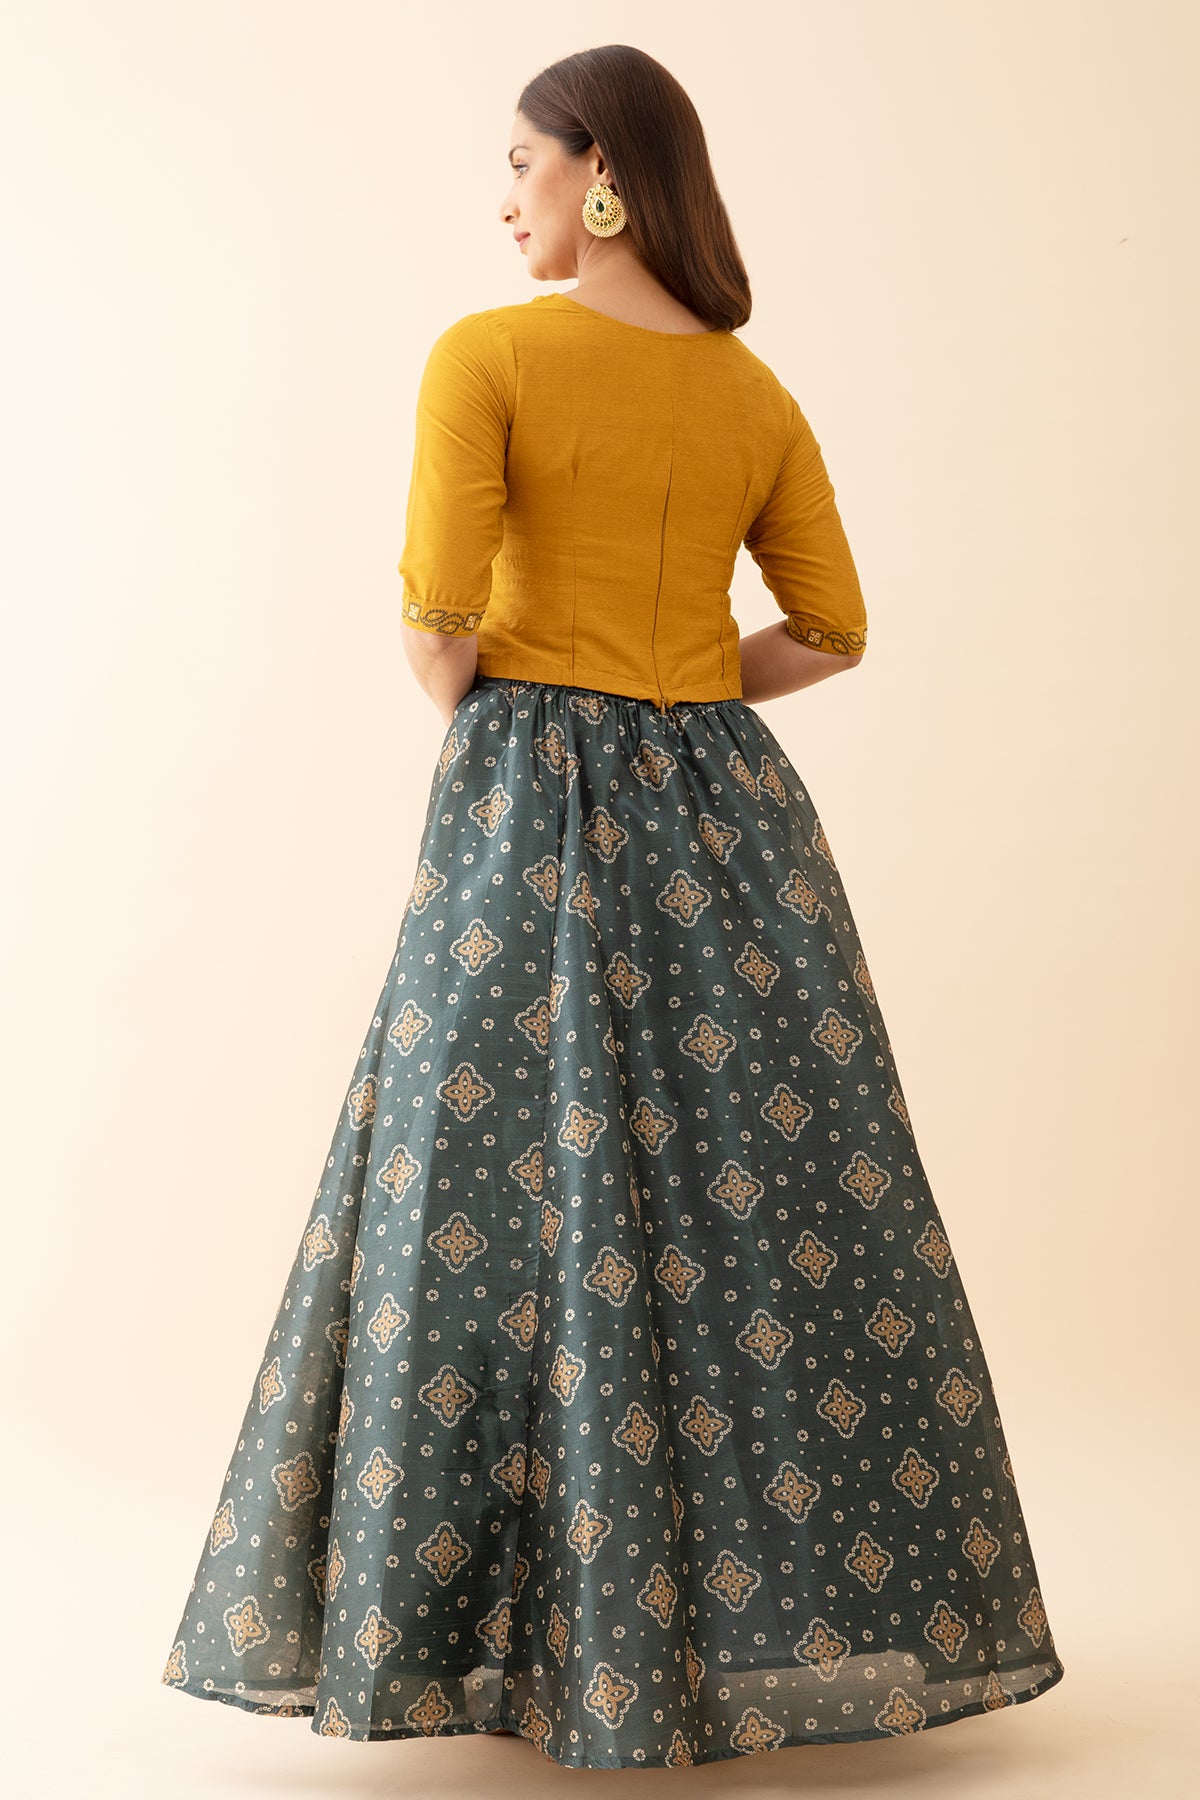 Bandhani Printed Skirtset with Printed Yoke - Mustard & Green